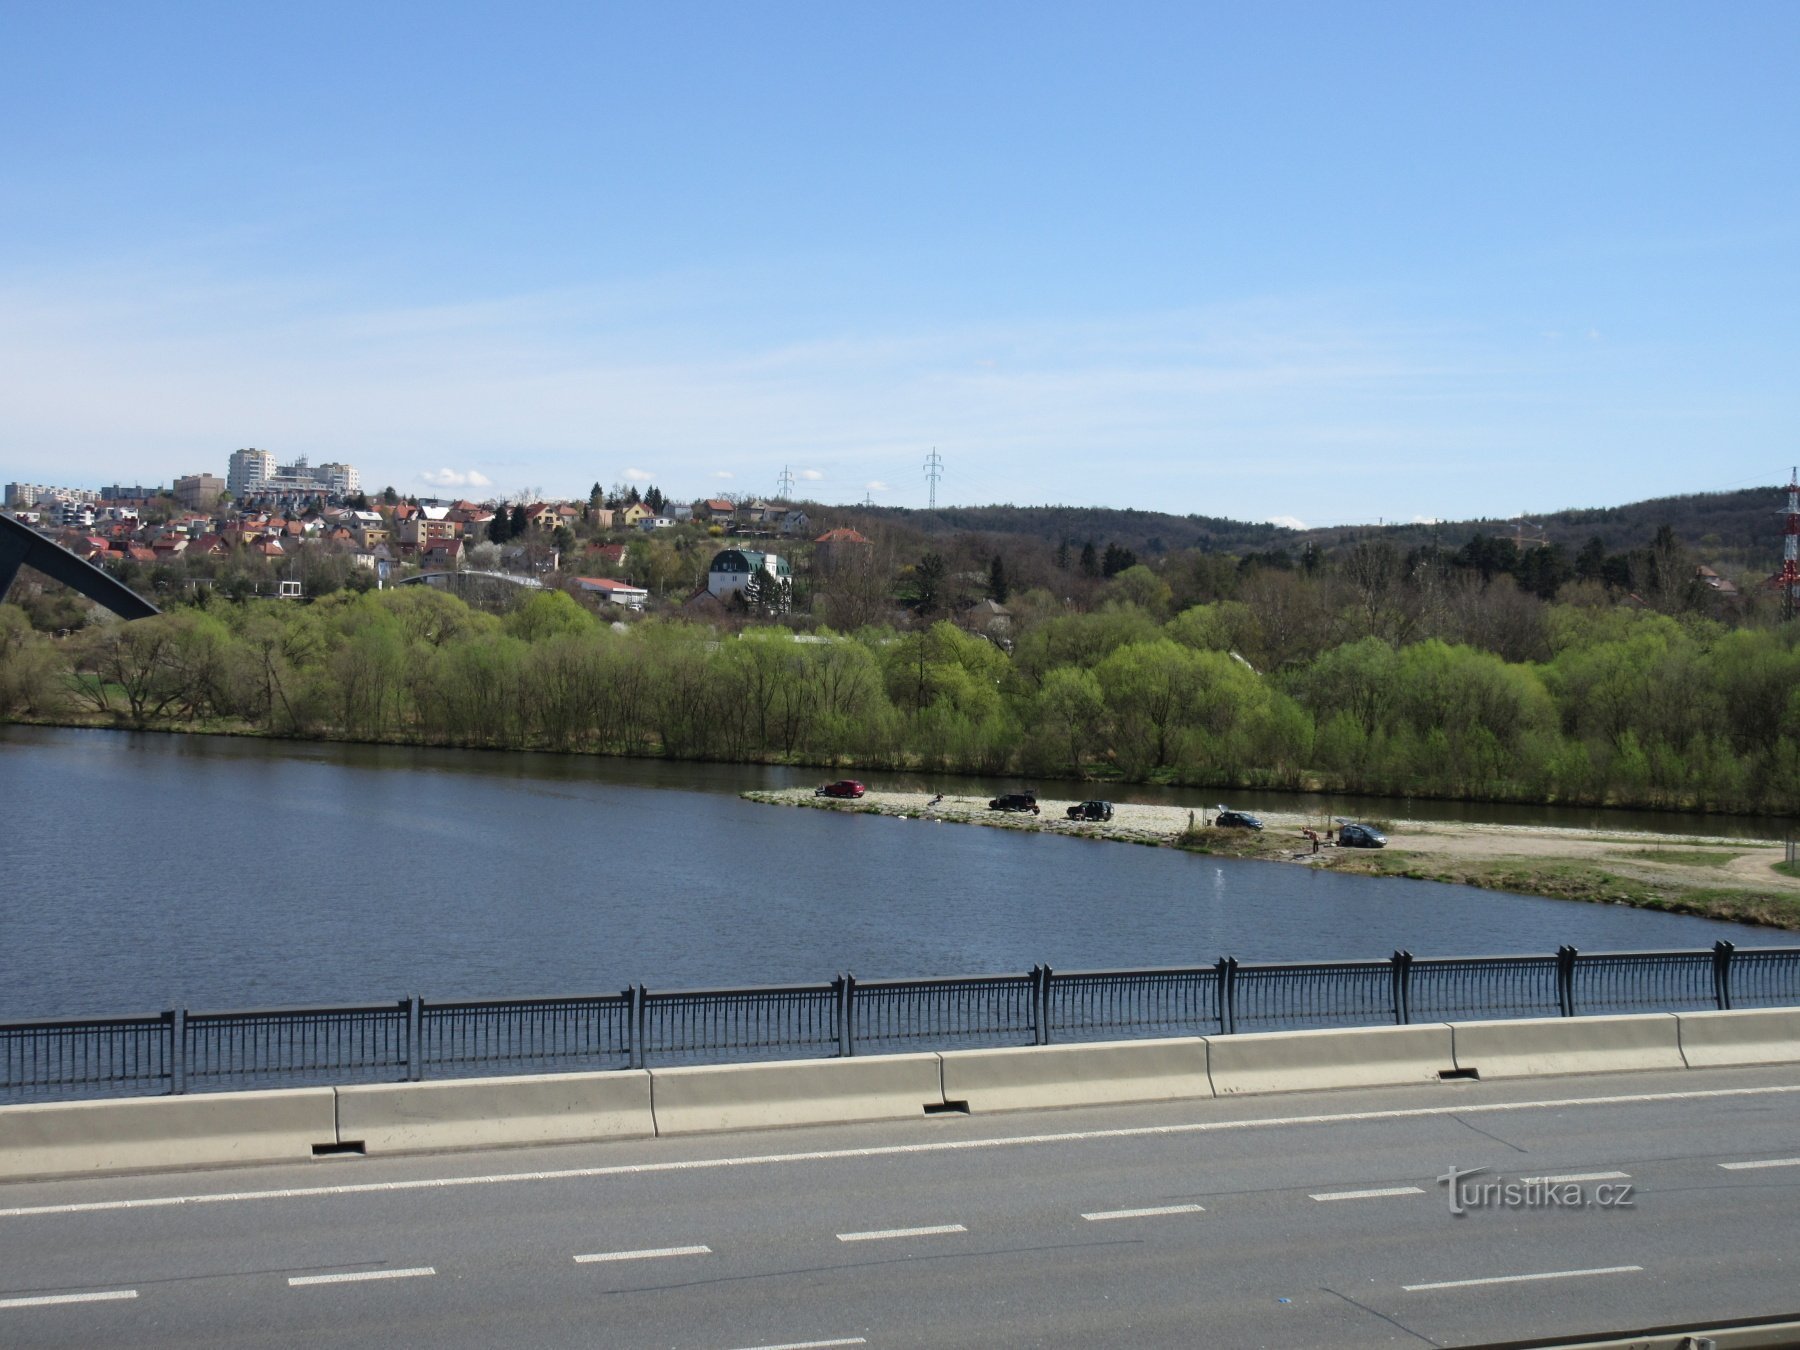 Lahovice - torres de observação da ponte Lahovice e a confluência dos rios Berounka e Vltava